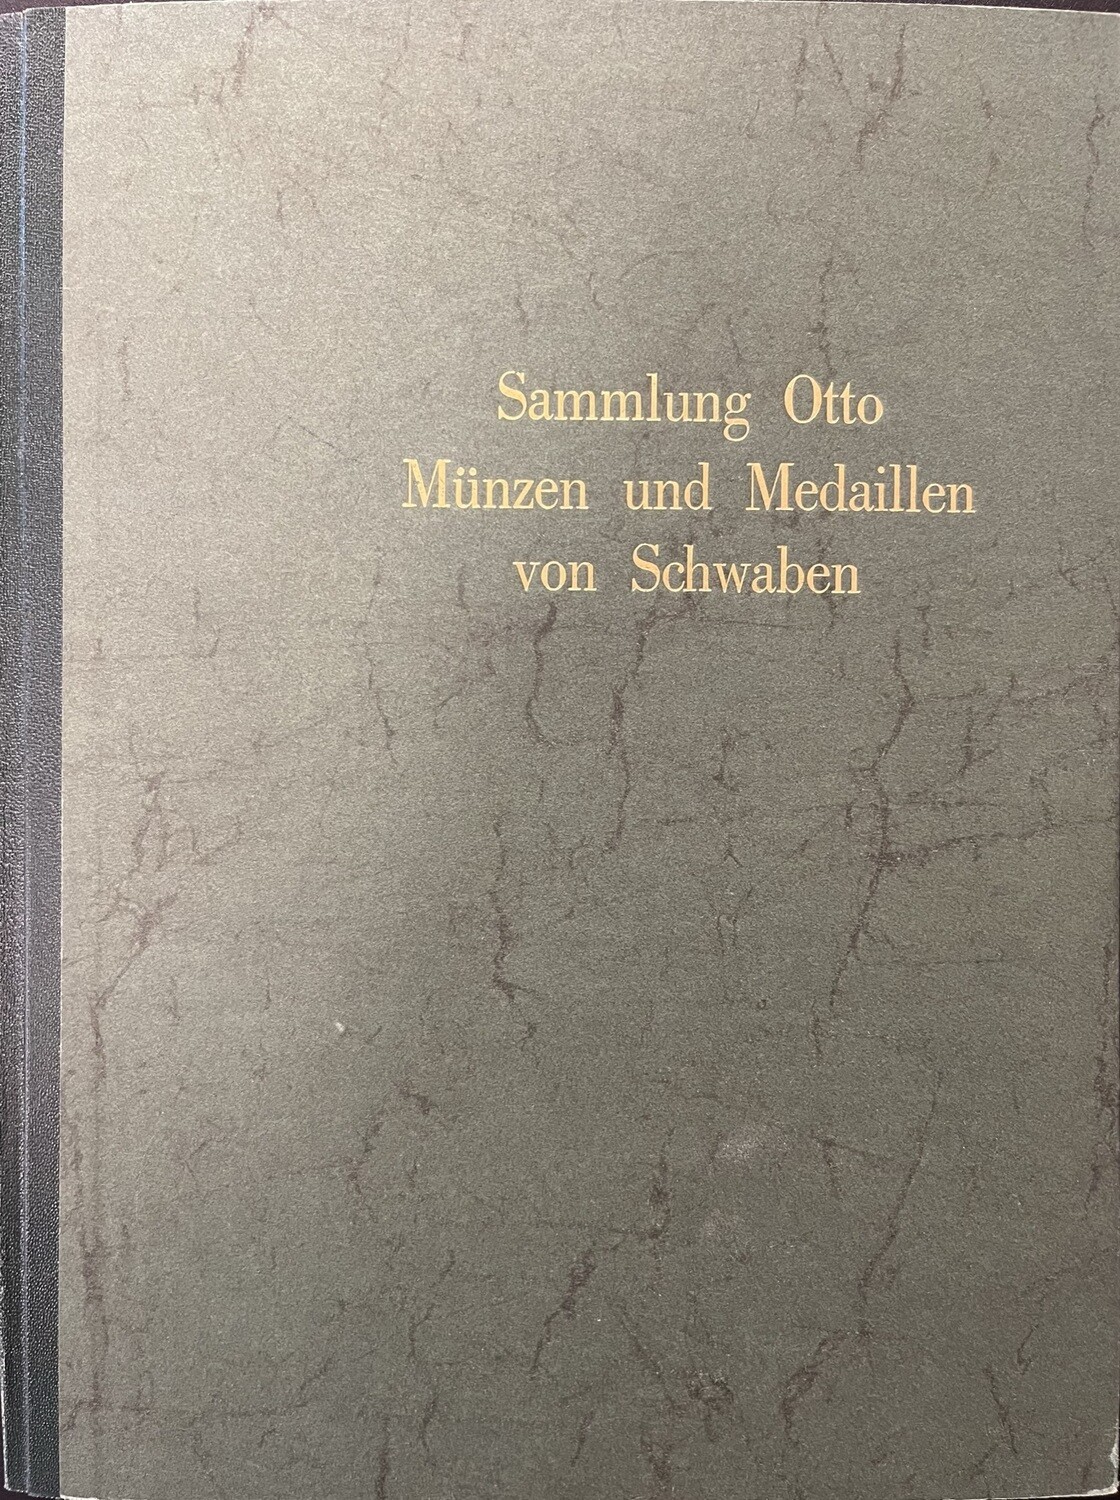 Sammlung Kommerzienrat H. Otto, Stuttgart. Münzen und Medaillen von Schwaben